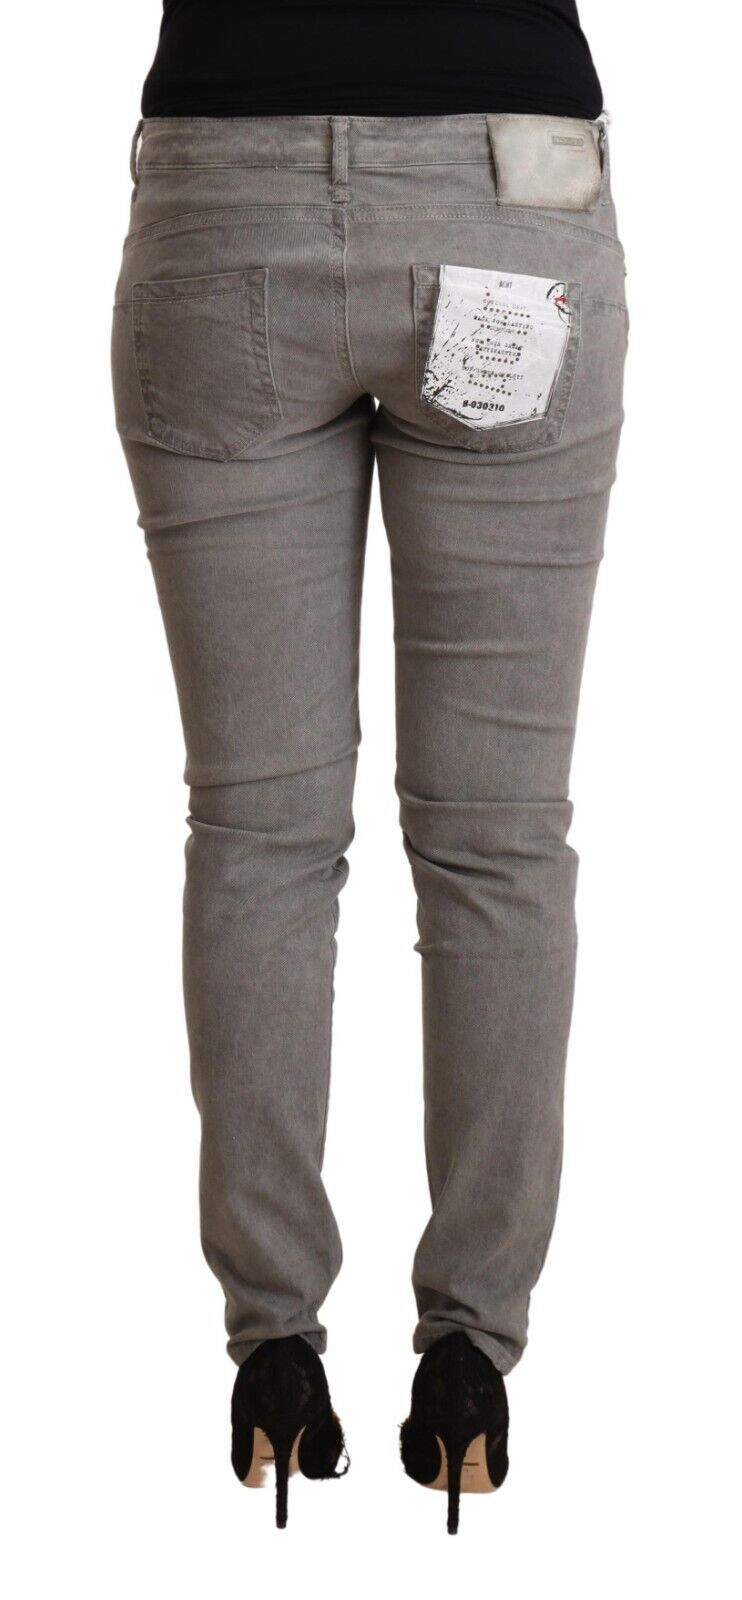 Acht Sleek Gray Skinny Low Waist Jeans